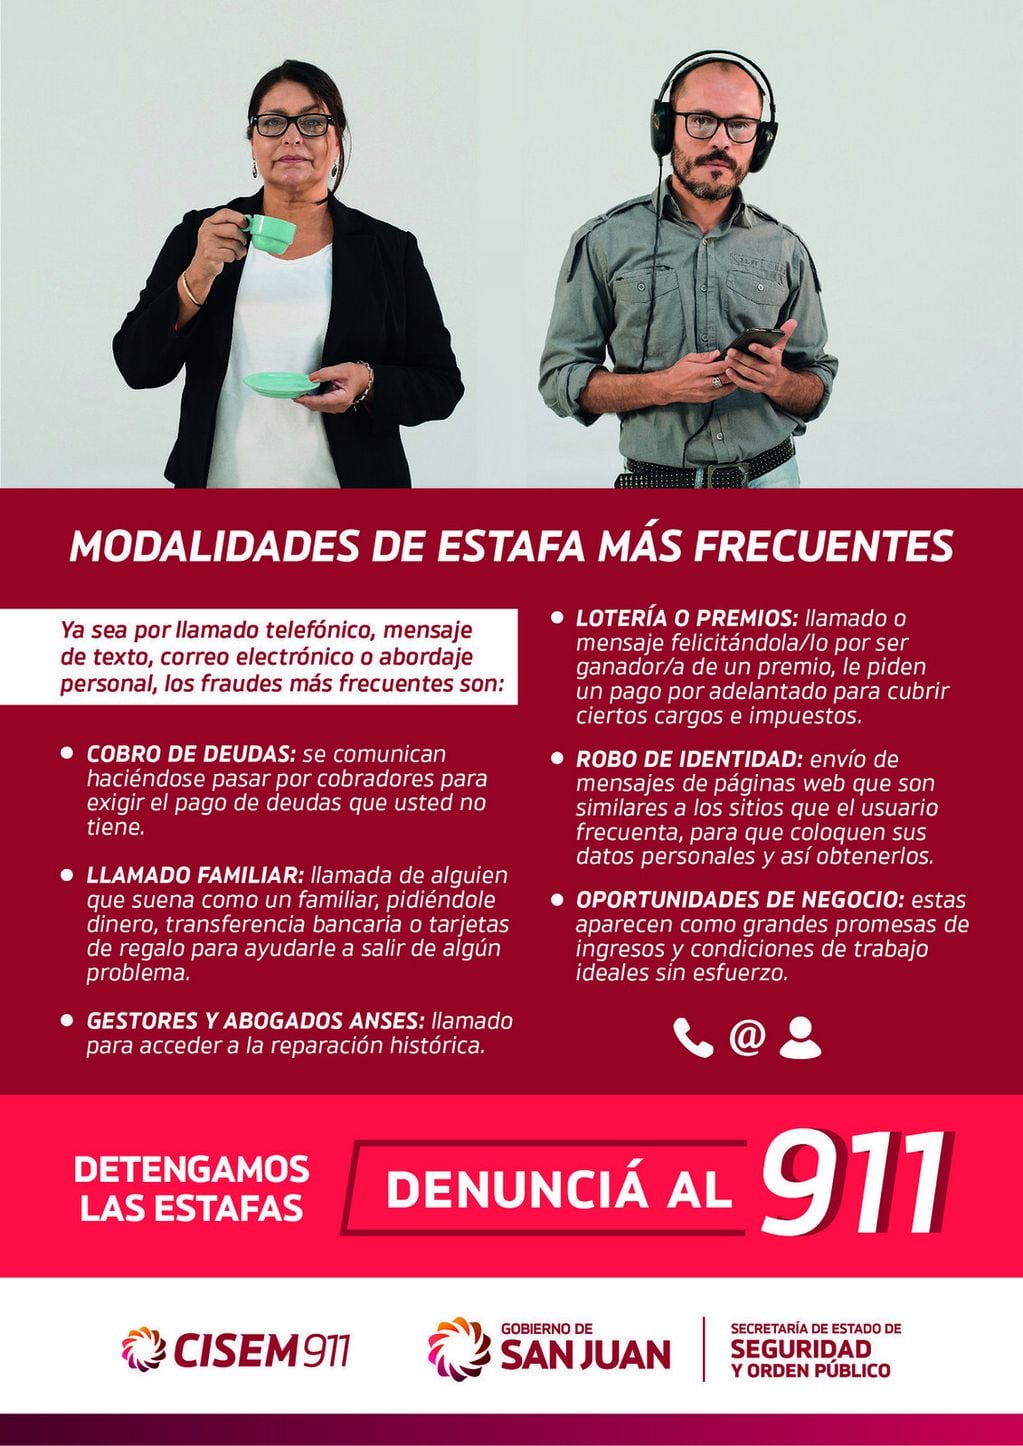 Uno de los afiches de la campaña gráfica que alerta sobre estafas telefónicas.